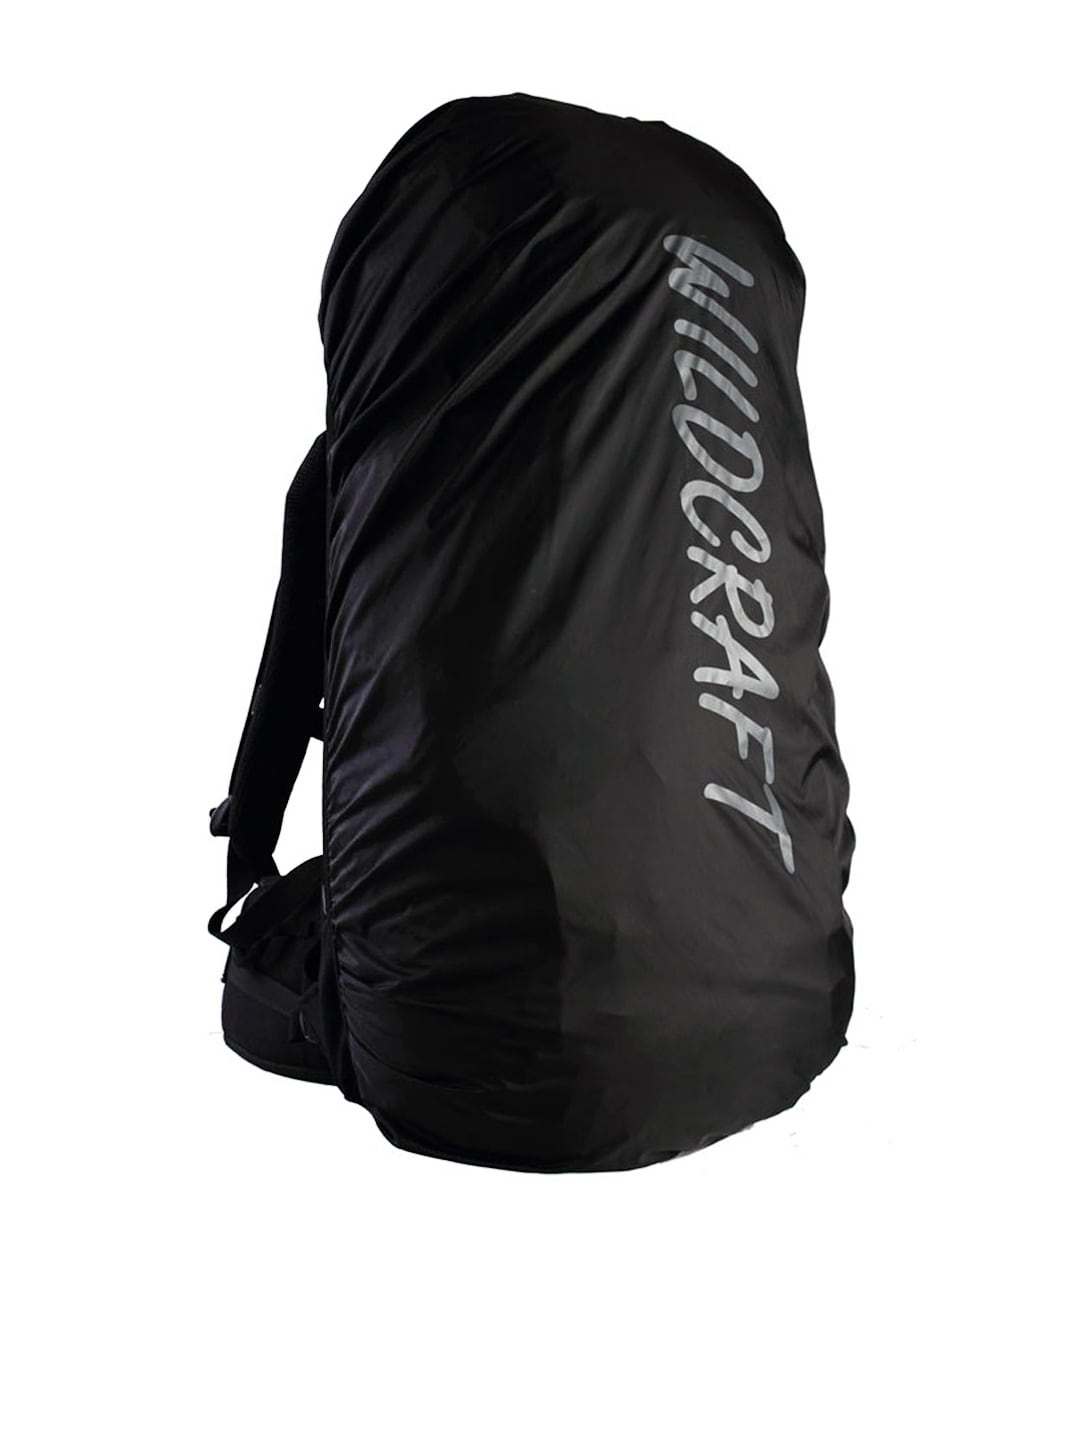 Wildcraft Unisex Black Rain Cover for Backpacks